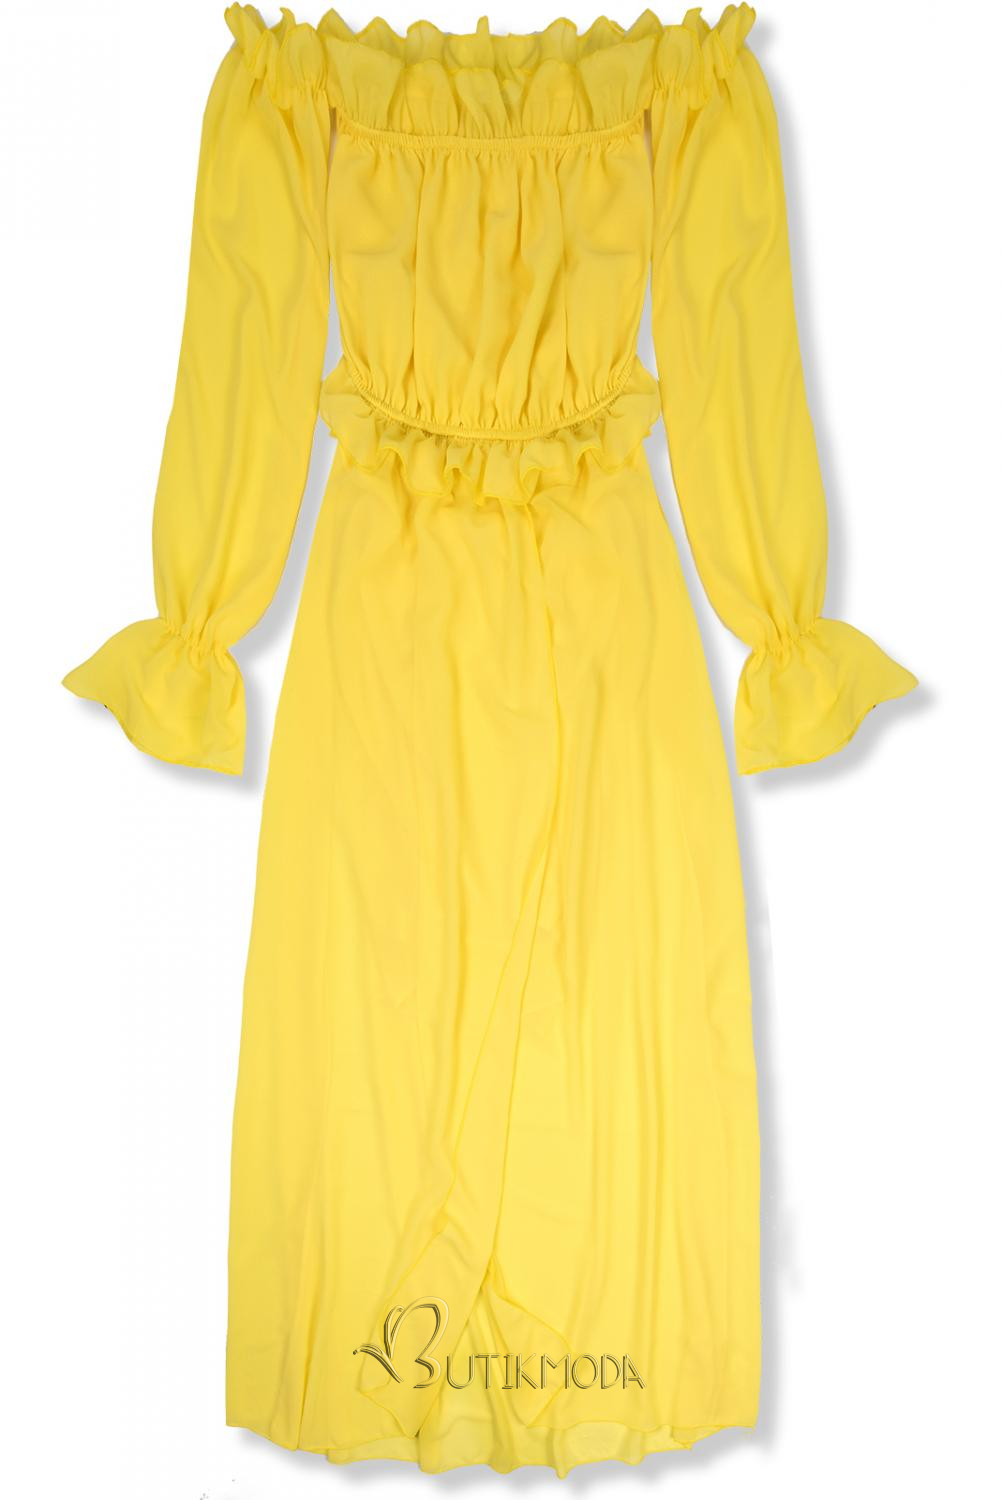 Sárga színű hosszú nyári ruha